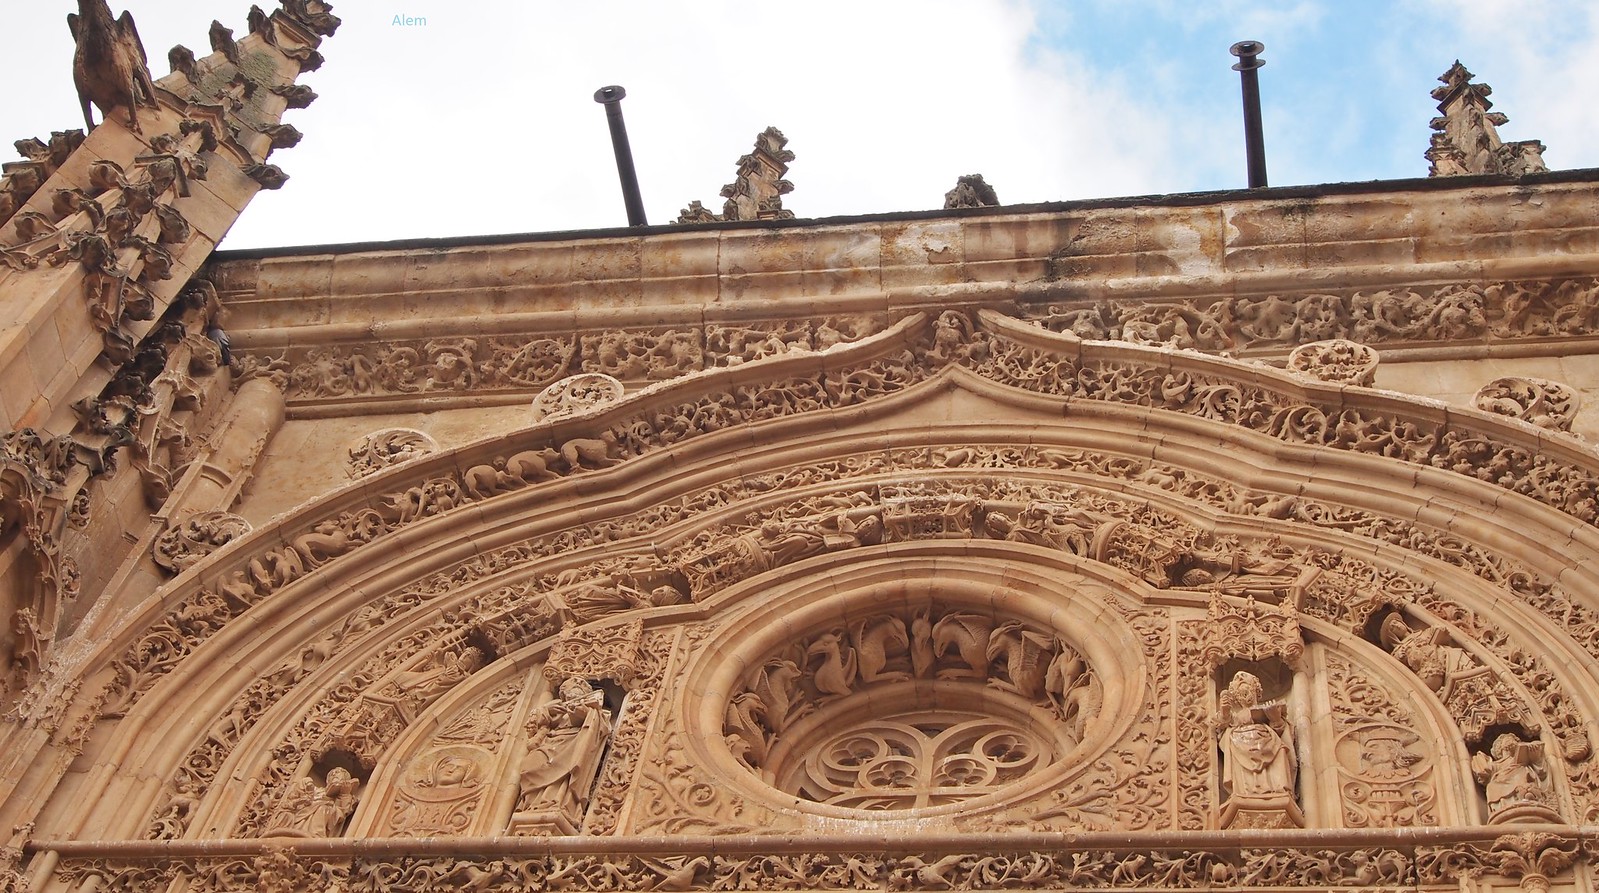 Espagne, Salamanque, les cathédrales - 14.09.2016 (3) | Flickr